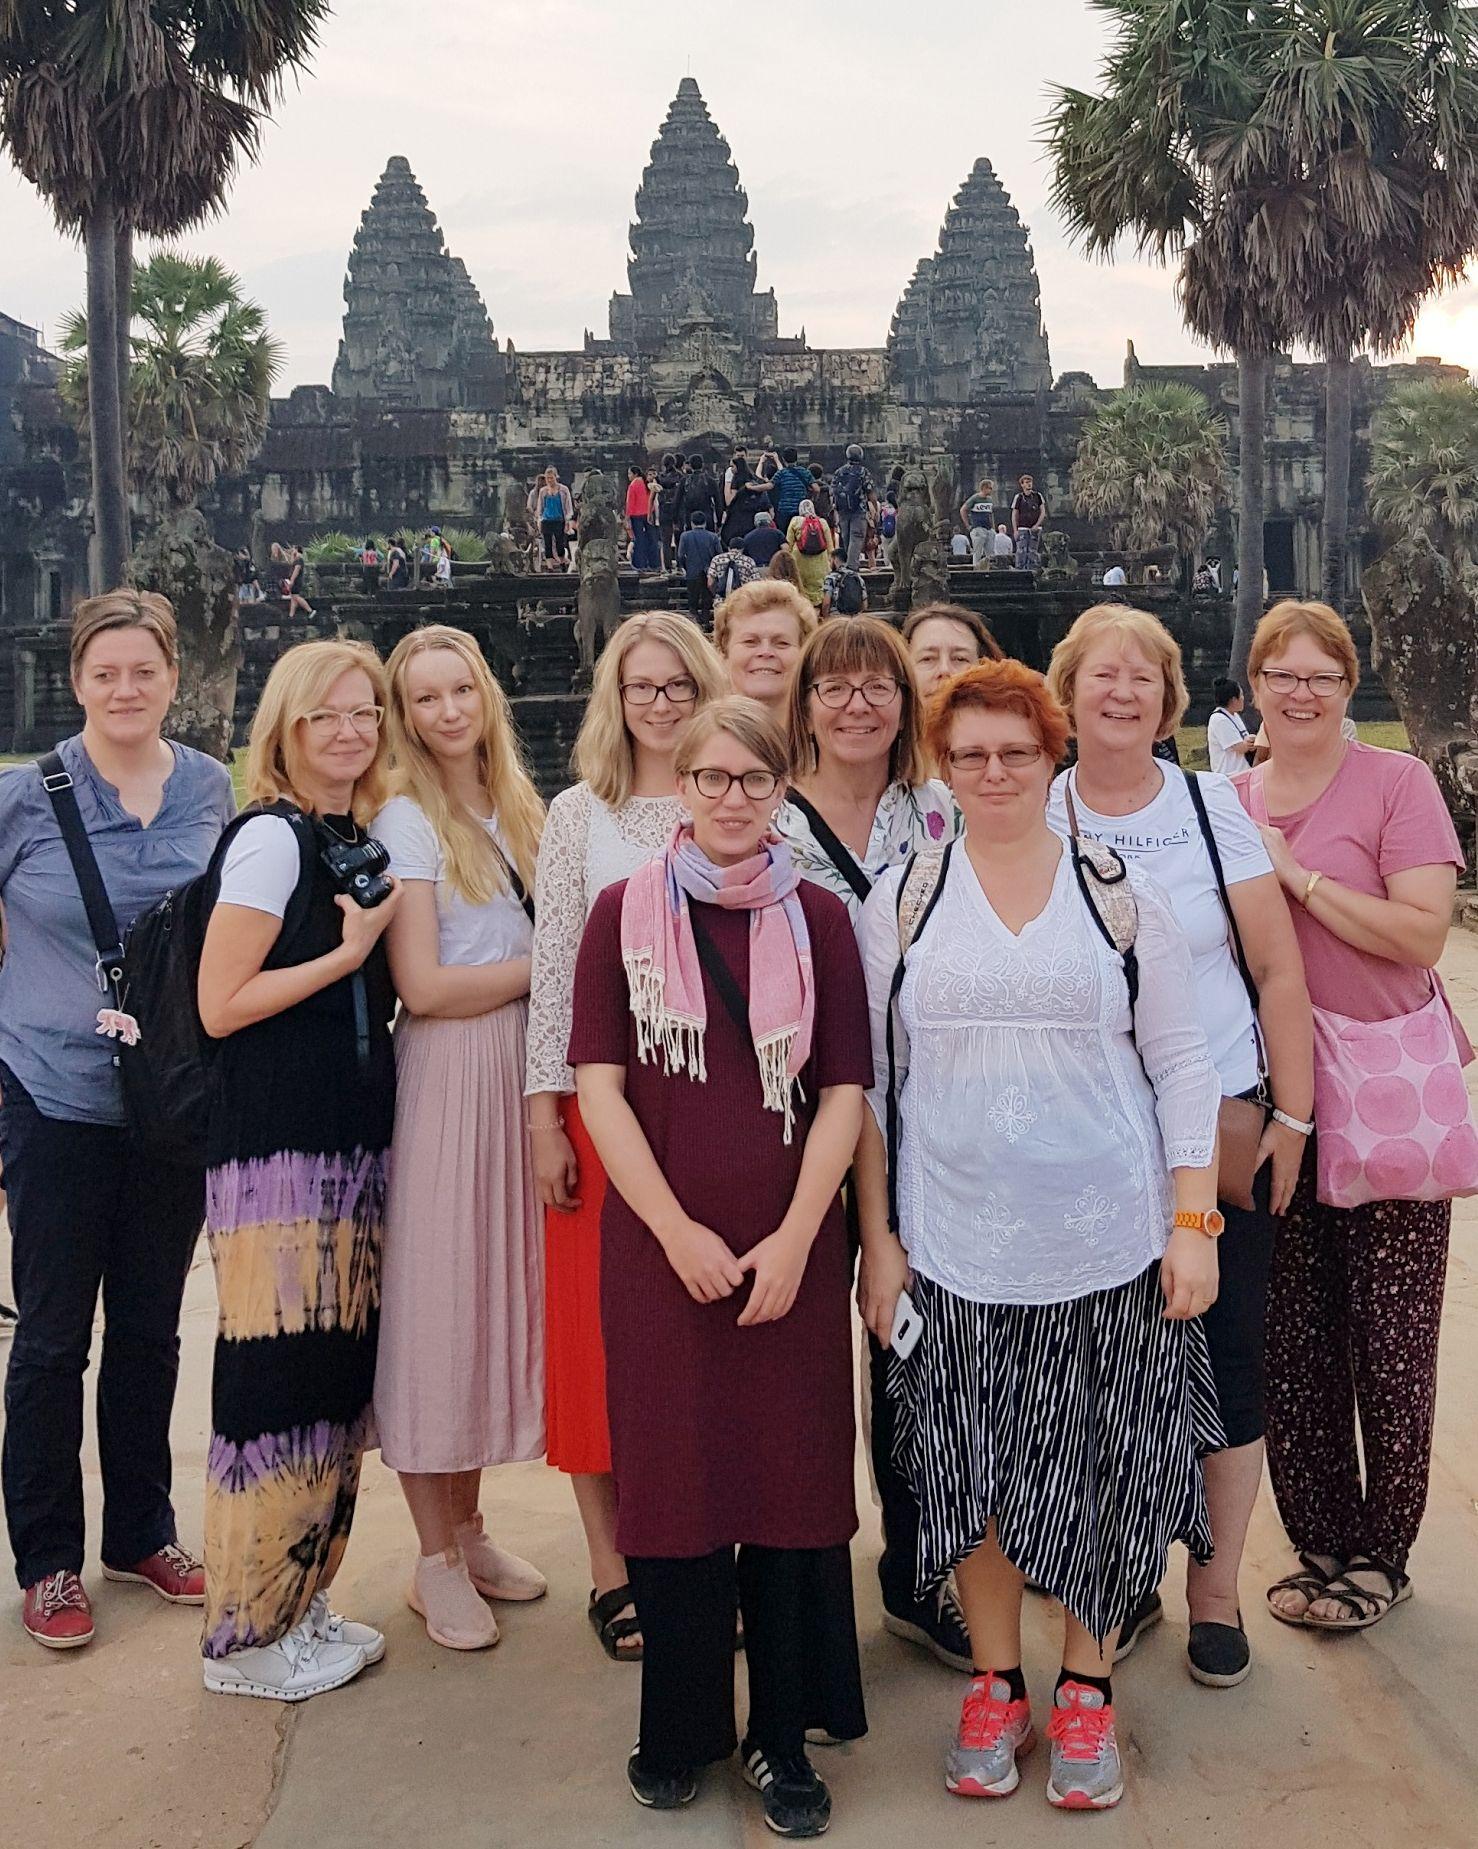 Grupp med kvinnor står framför ett tempel.